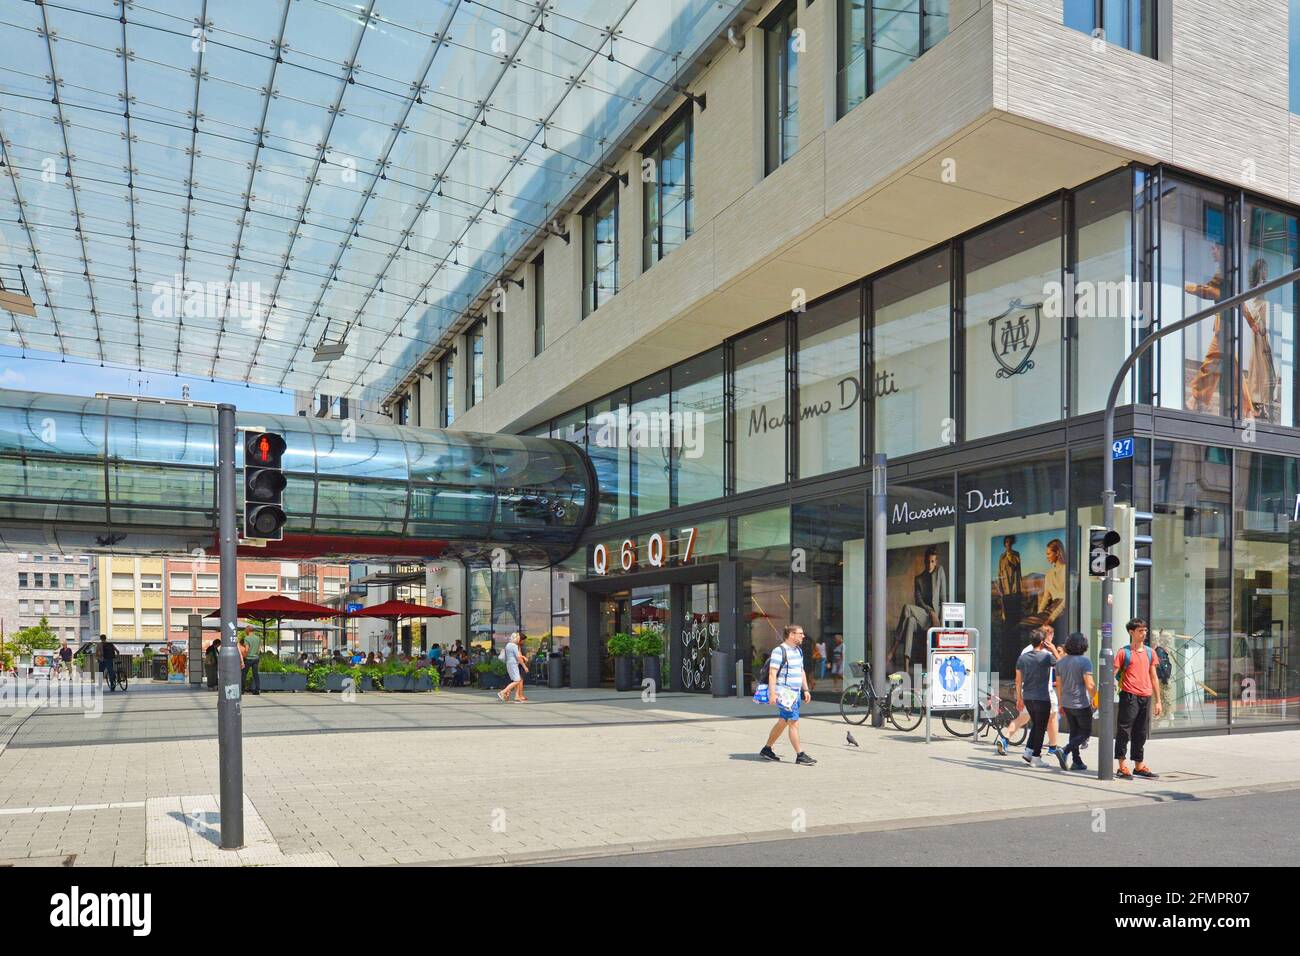 Mannheim, Germania - Luglio 2019: Ingresso del grande e moderno centro commerciale chiamato 'Q6 Q7' con persone nel centro di Mannheim Foto Stock